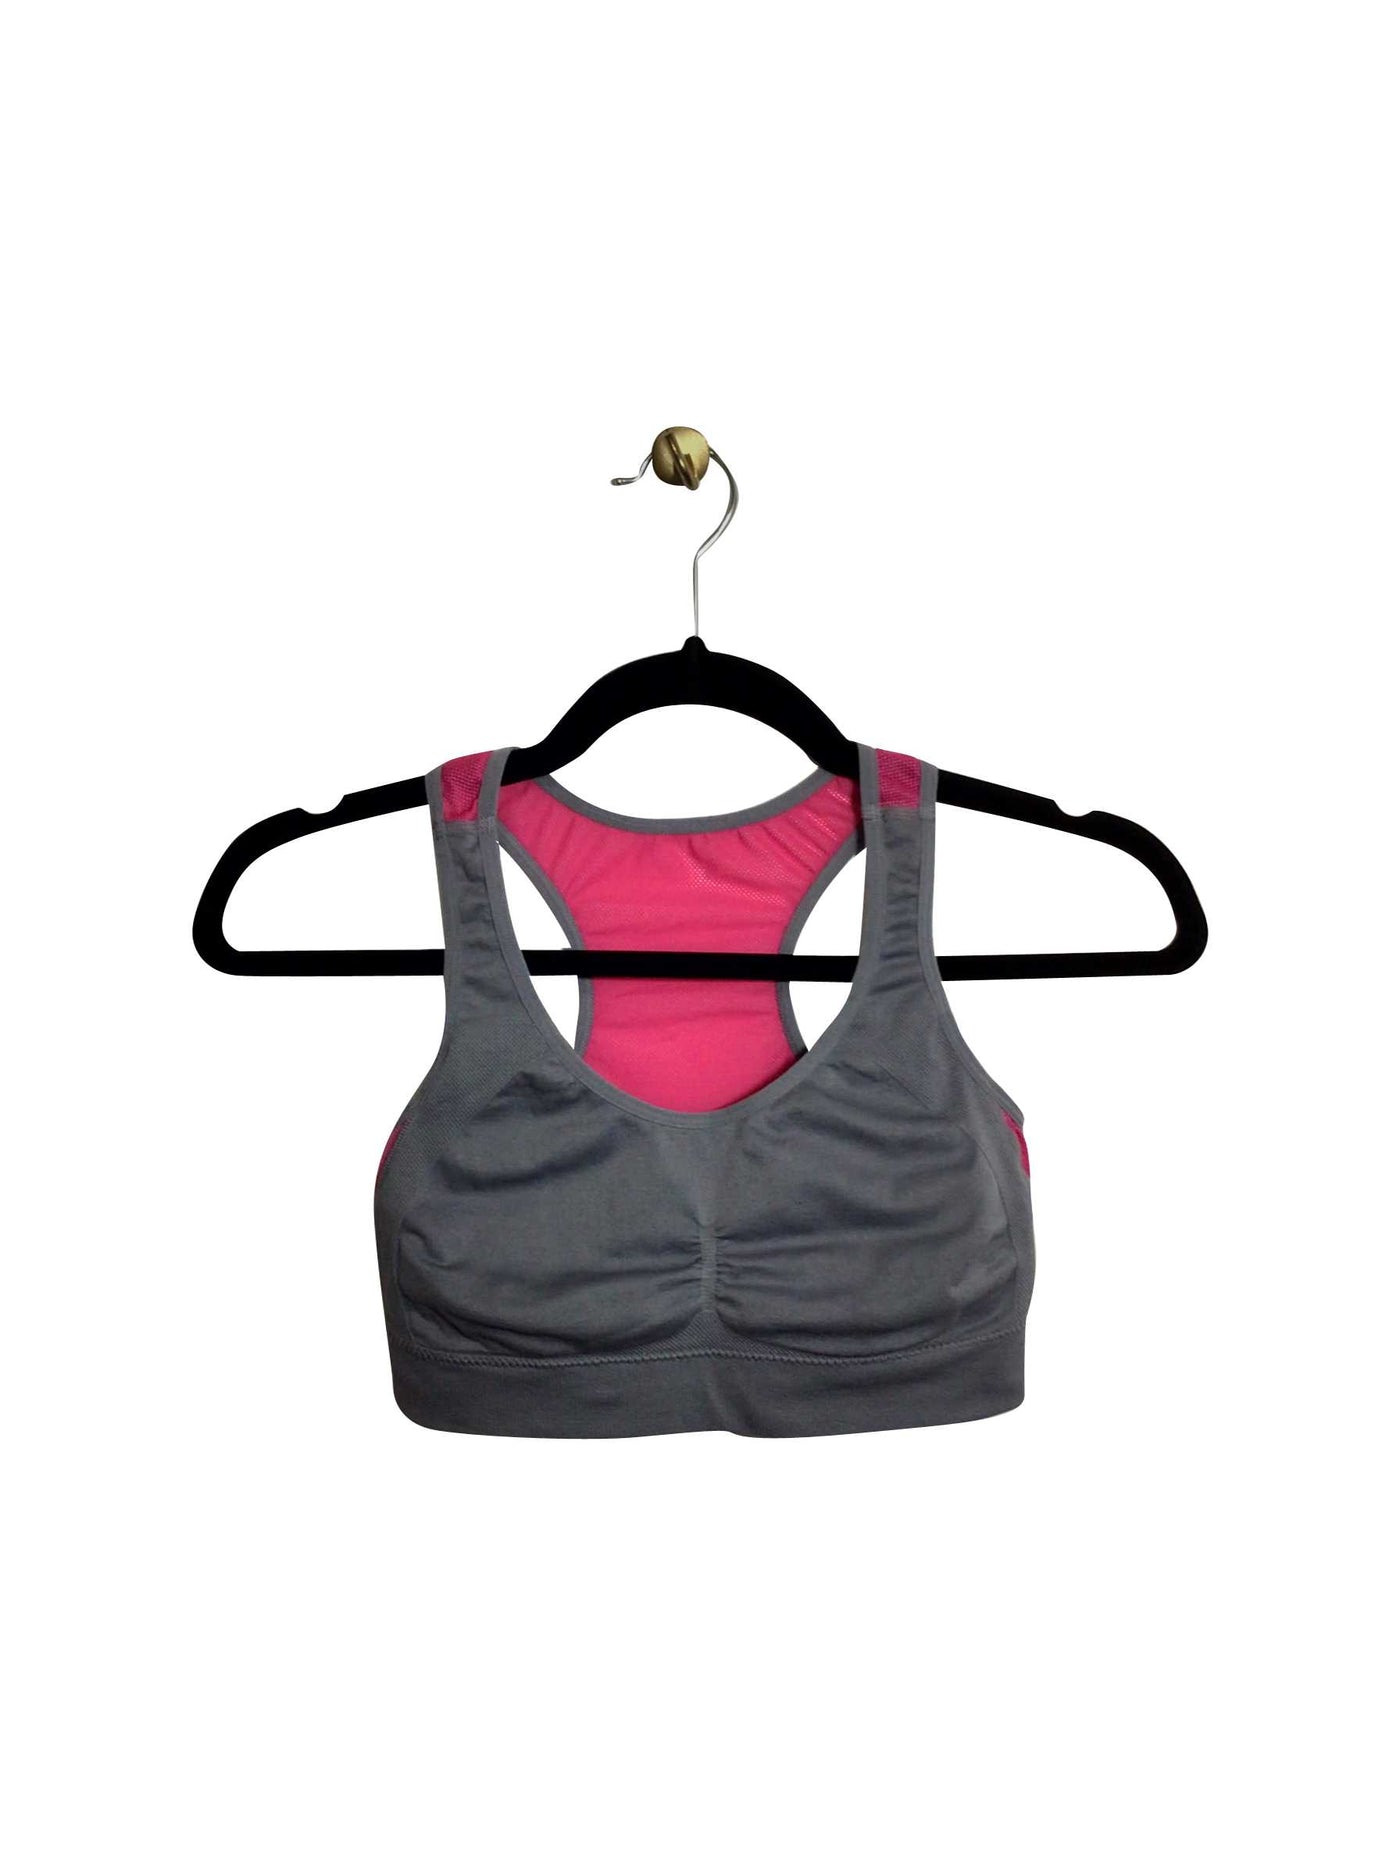 UNBRANDED Regular fit Activewear Sport bra in Gray - Size S | 12.59 $ KOOP